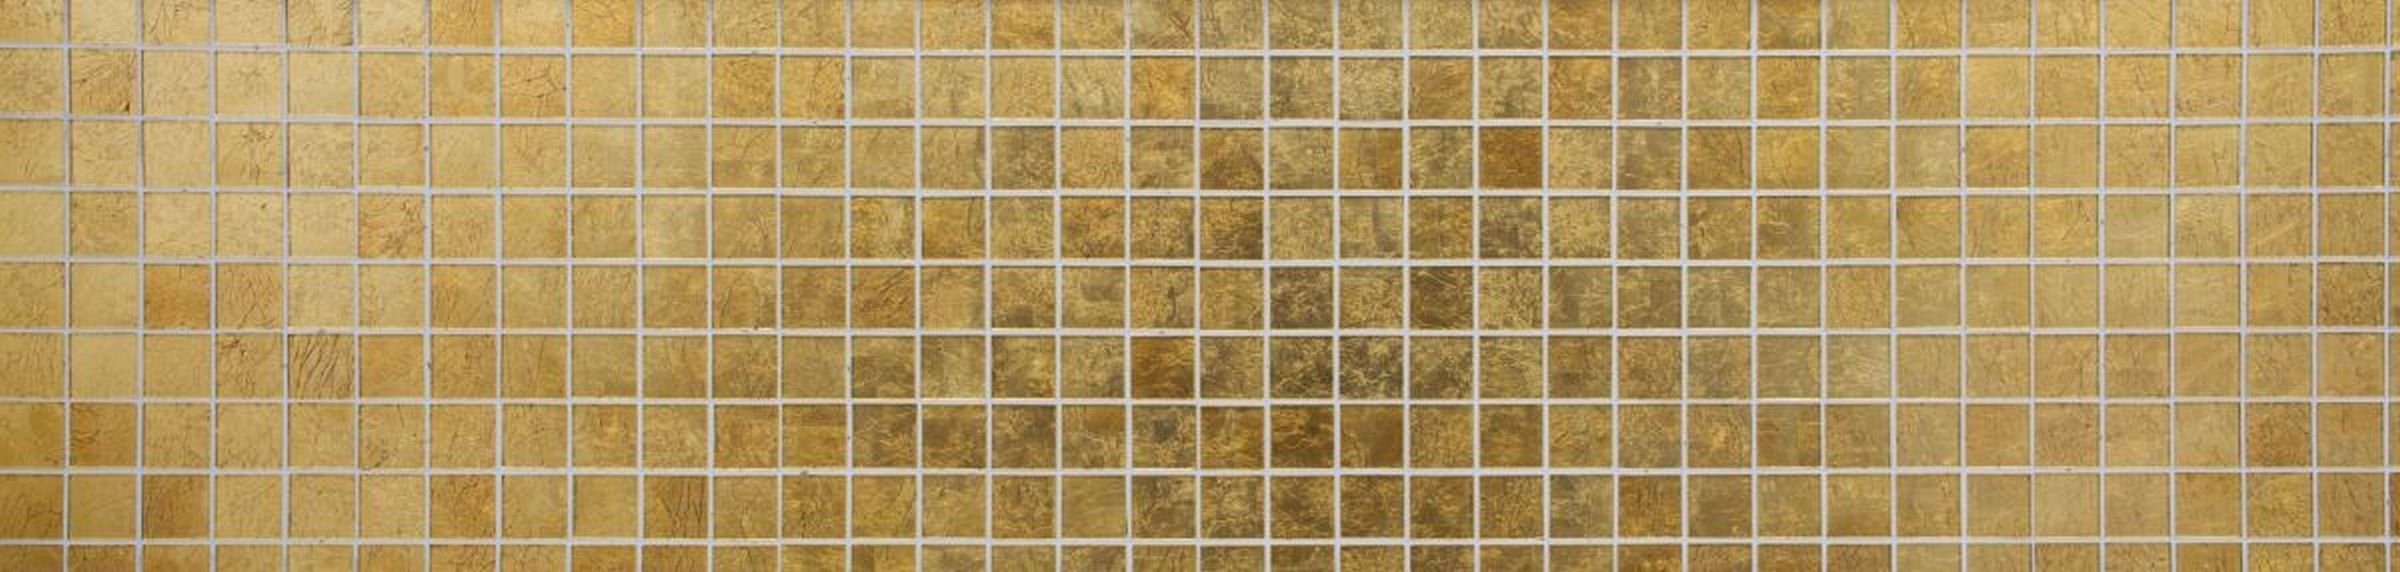 gold Mosani Küche Fliesenspiegel Struktur Mosaikfliesen Mosaikfliese Glasmosaik